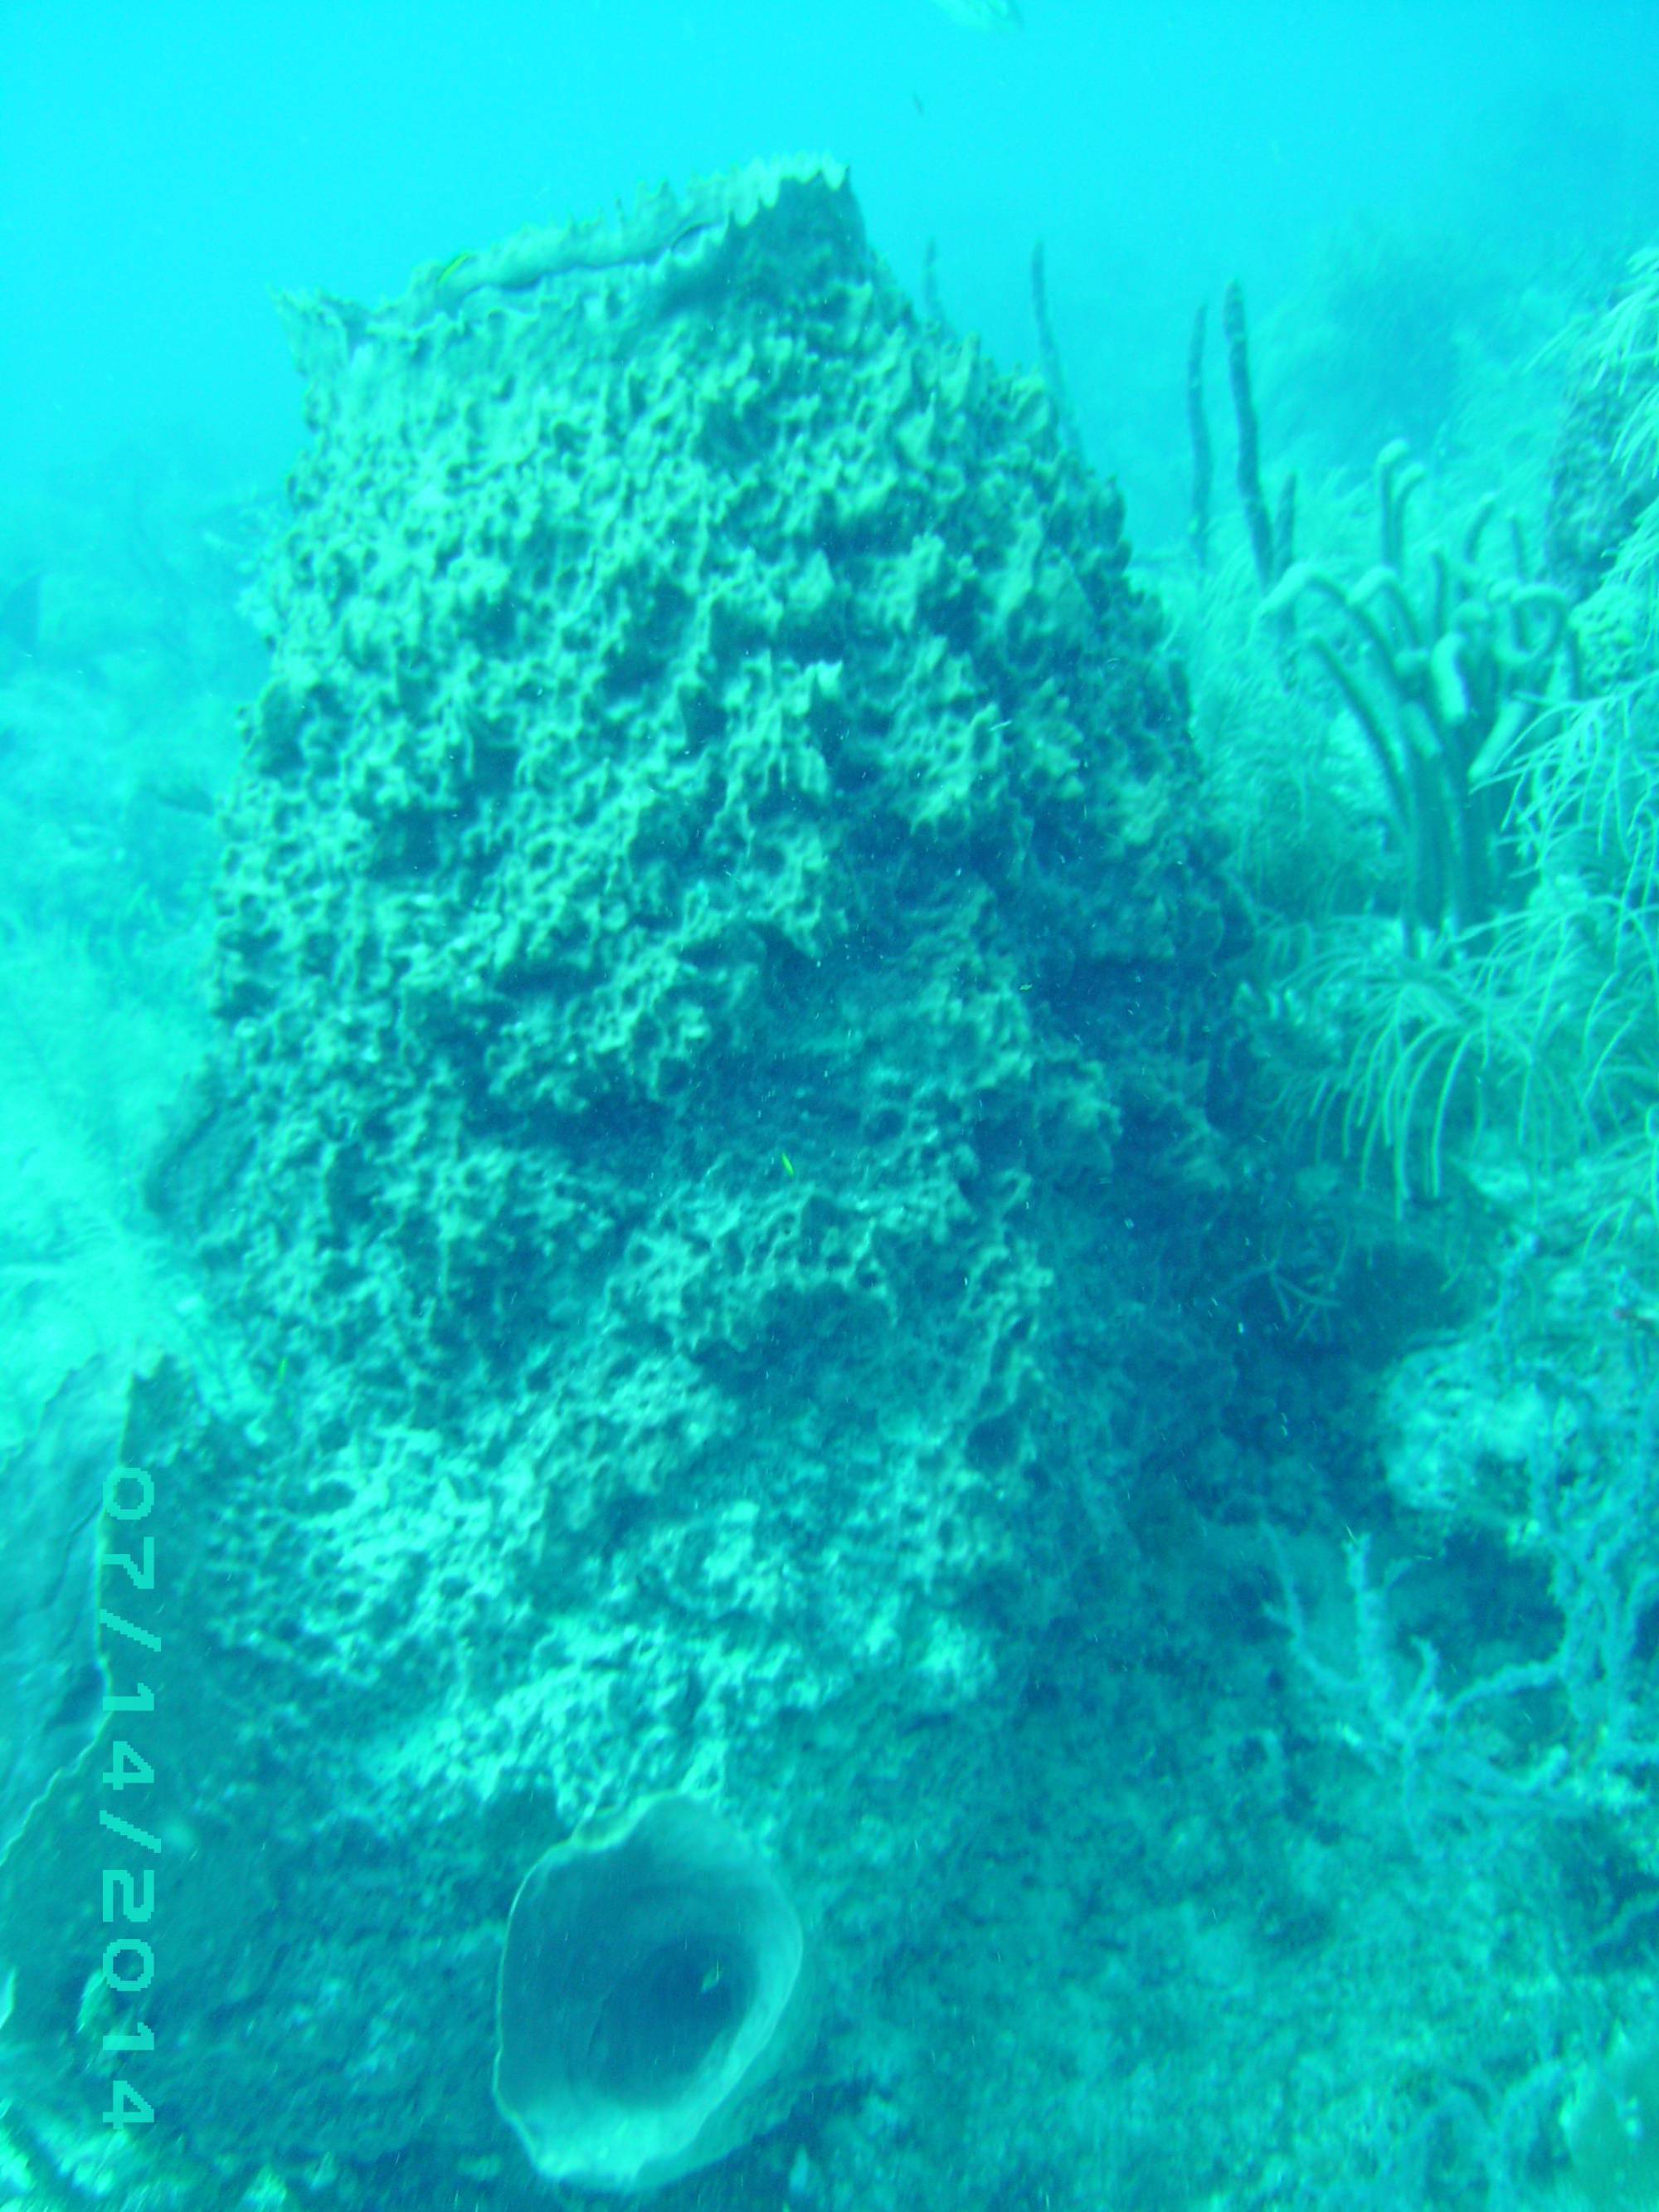 2014: Conch Reef Giant Barrel Sponge